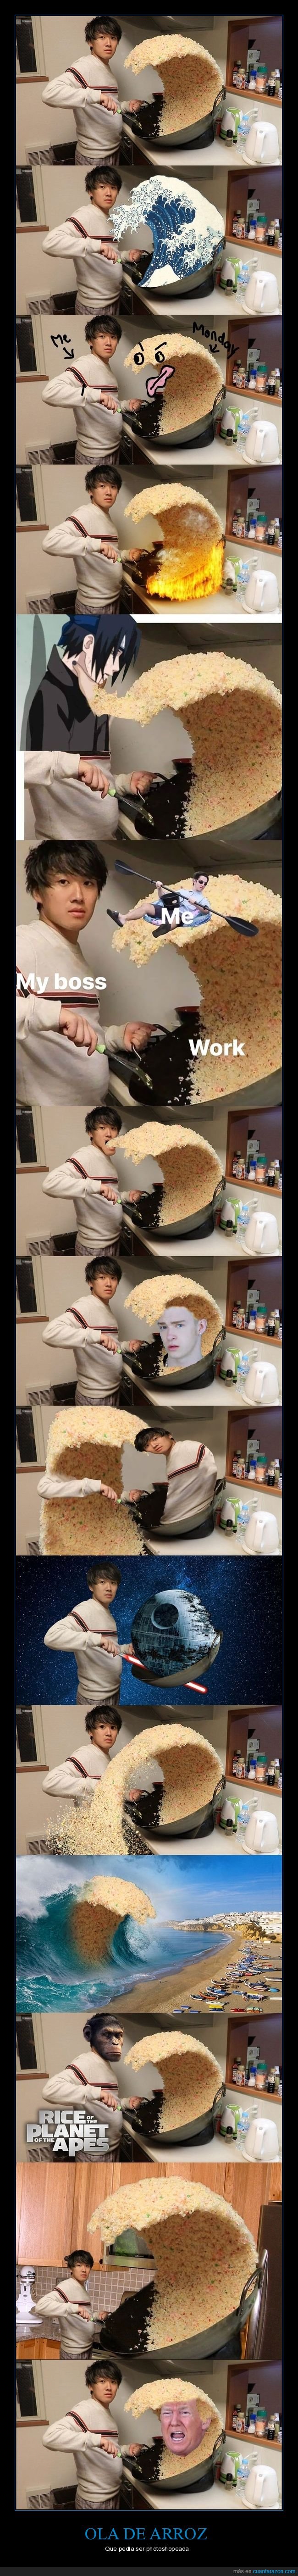 ola.arroz,photoshop